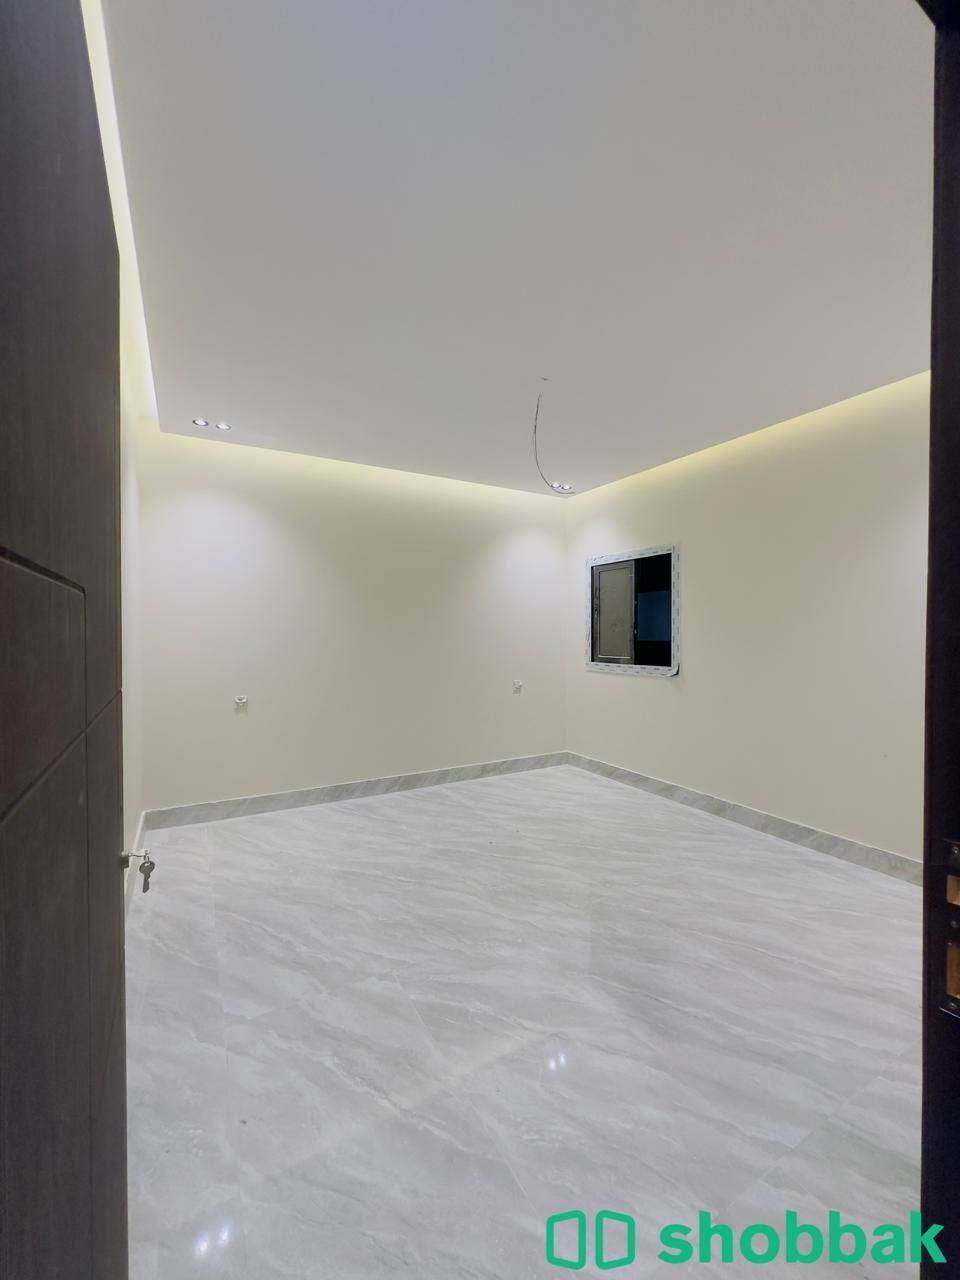 شقة 5 غرف بحي السلامة أمامية بمدخلين جديدة جاهزة للسكن تقبل البنك Shobbak Saudi Arabia